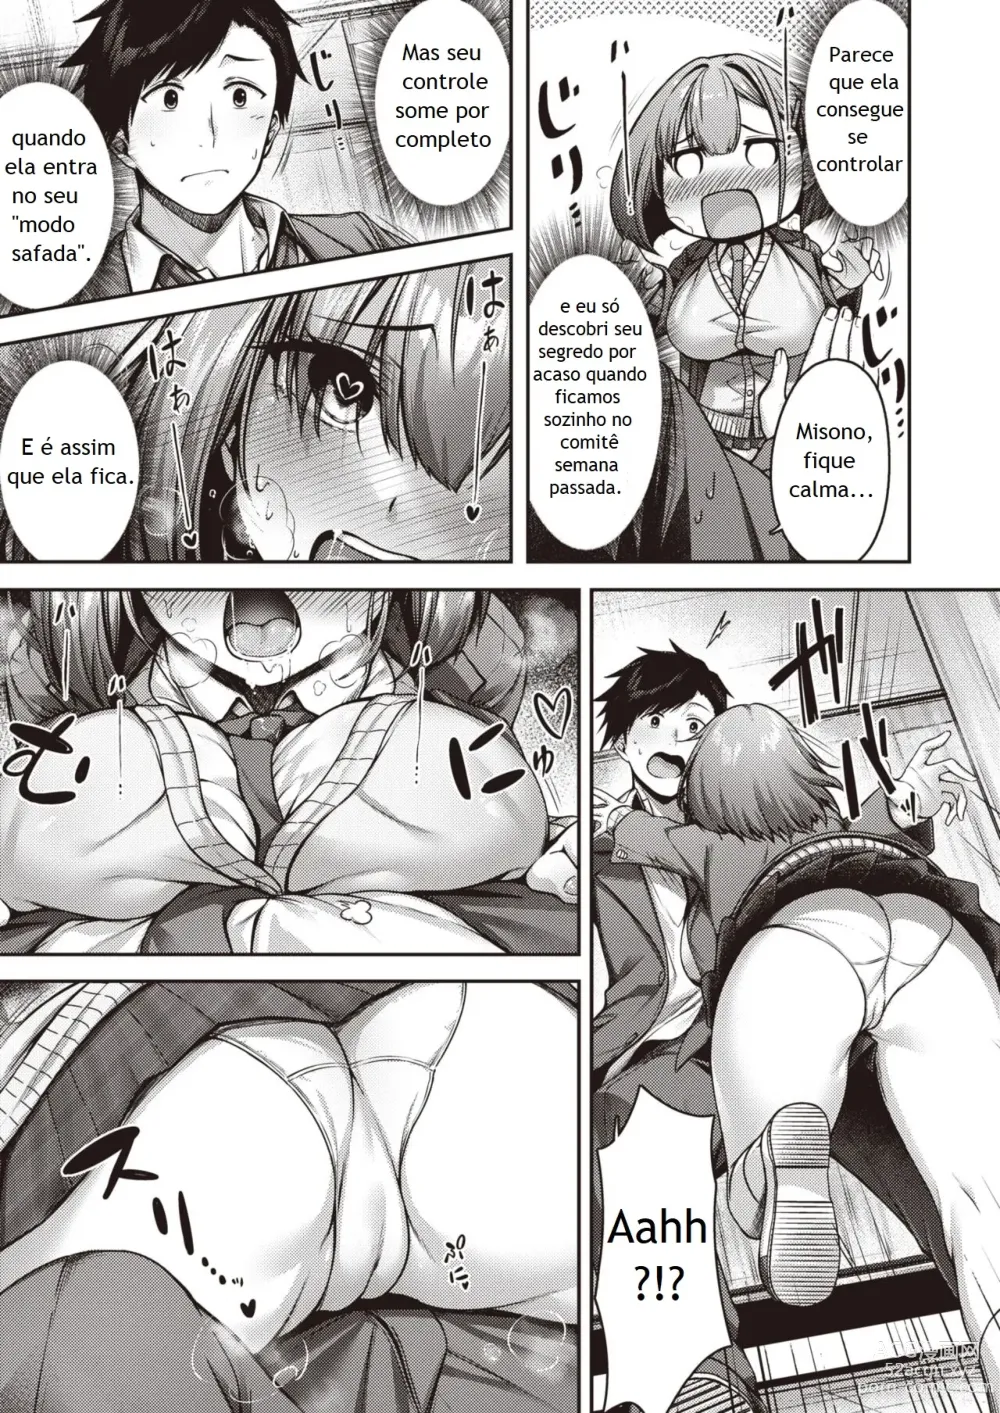 Page 7 of manga Momoiro Switch